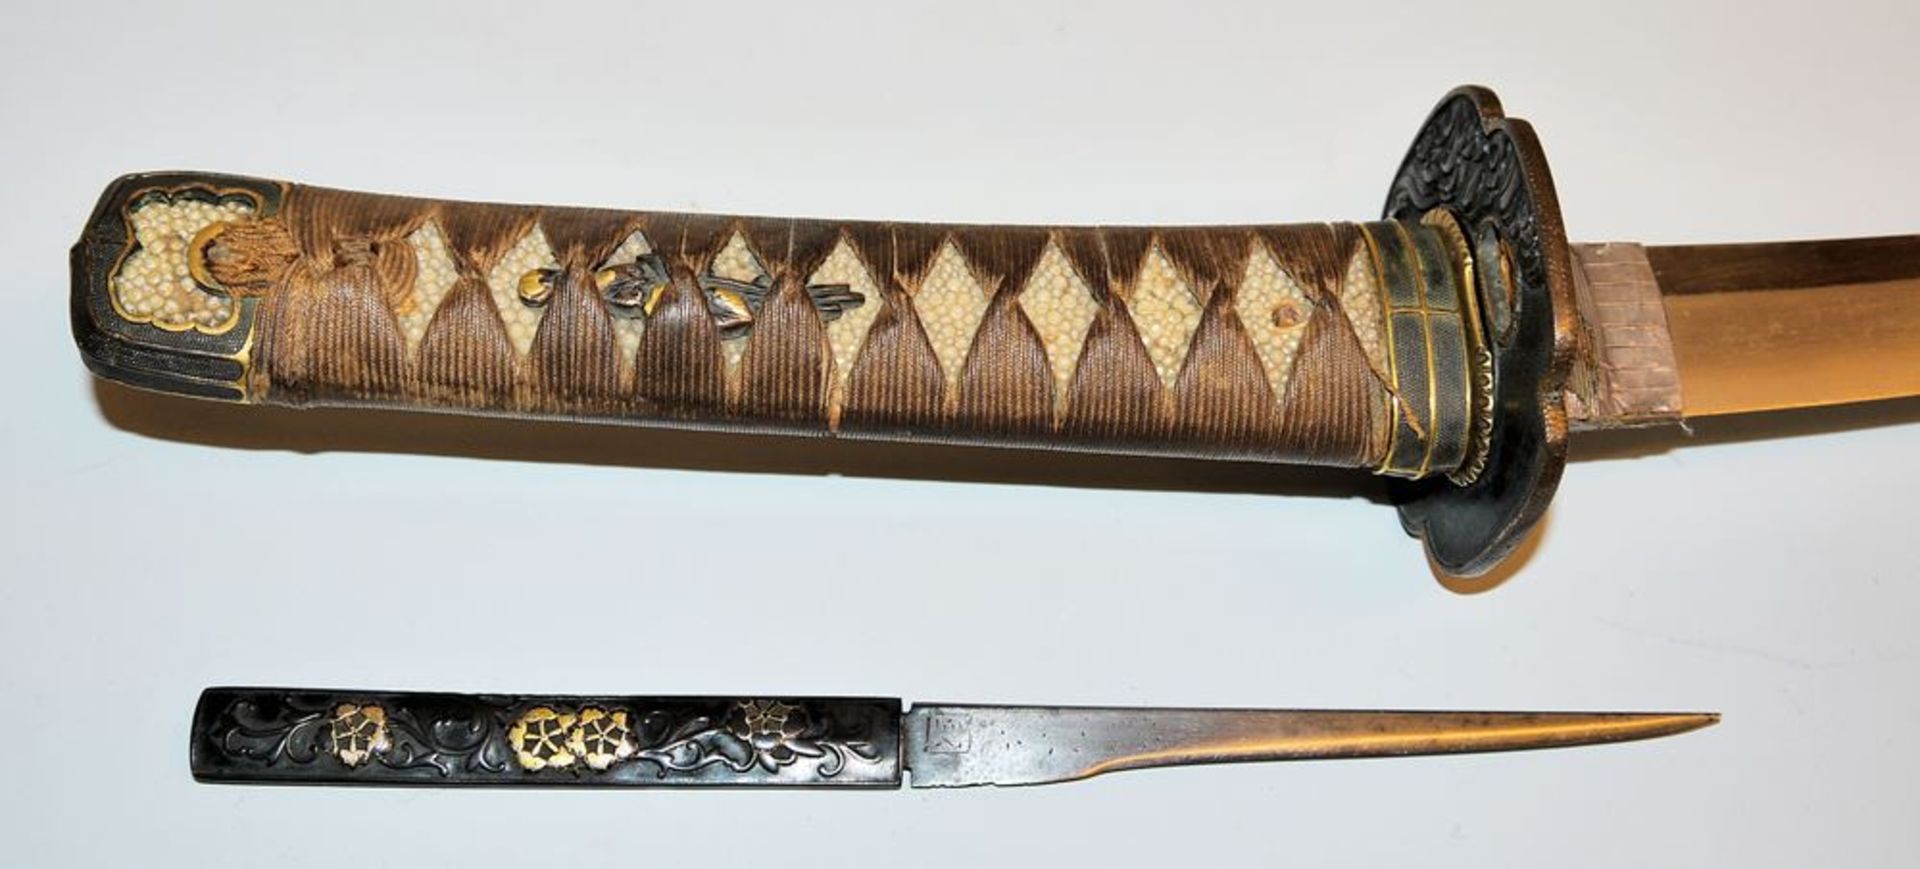 Wakizashi, Japanese sword of the Edo-Meiji period - Image 3 of 3